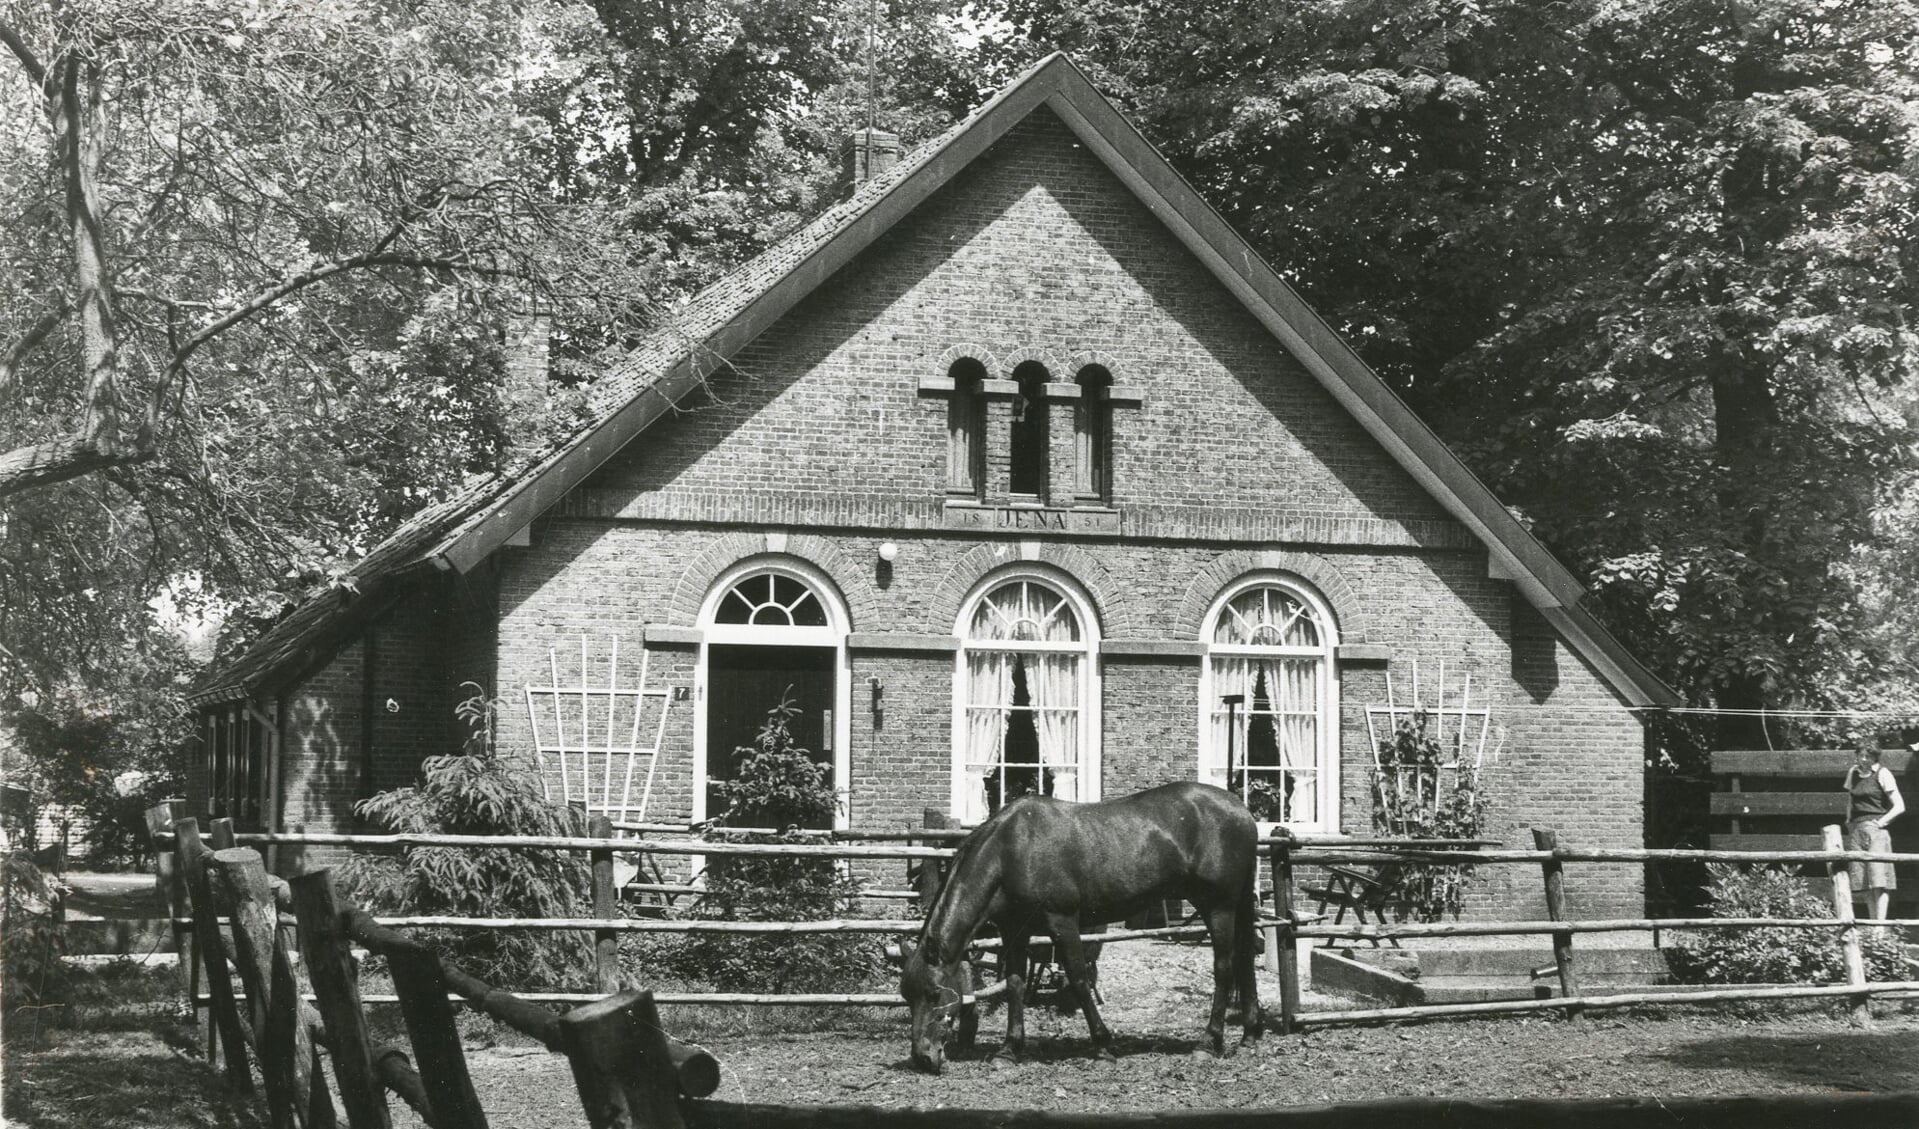 De voormalige boerderij Jena (1851) in Hummelo, genoemd naar de plaats waar baron H.J.C.J. van Heeckeren van Enghuizen slag heeft geleverd. Foto: H.B.A. Meijerink I, collectie Erfgoedcentrum Achterhoek en Liemers